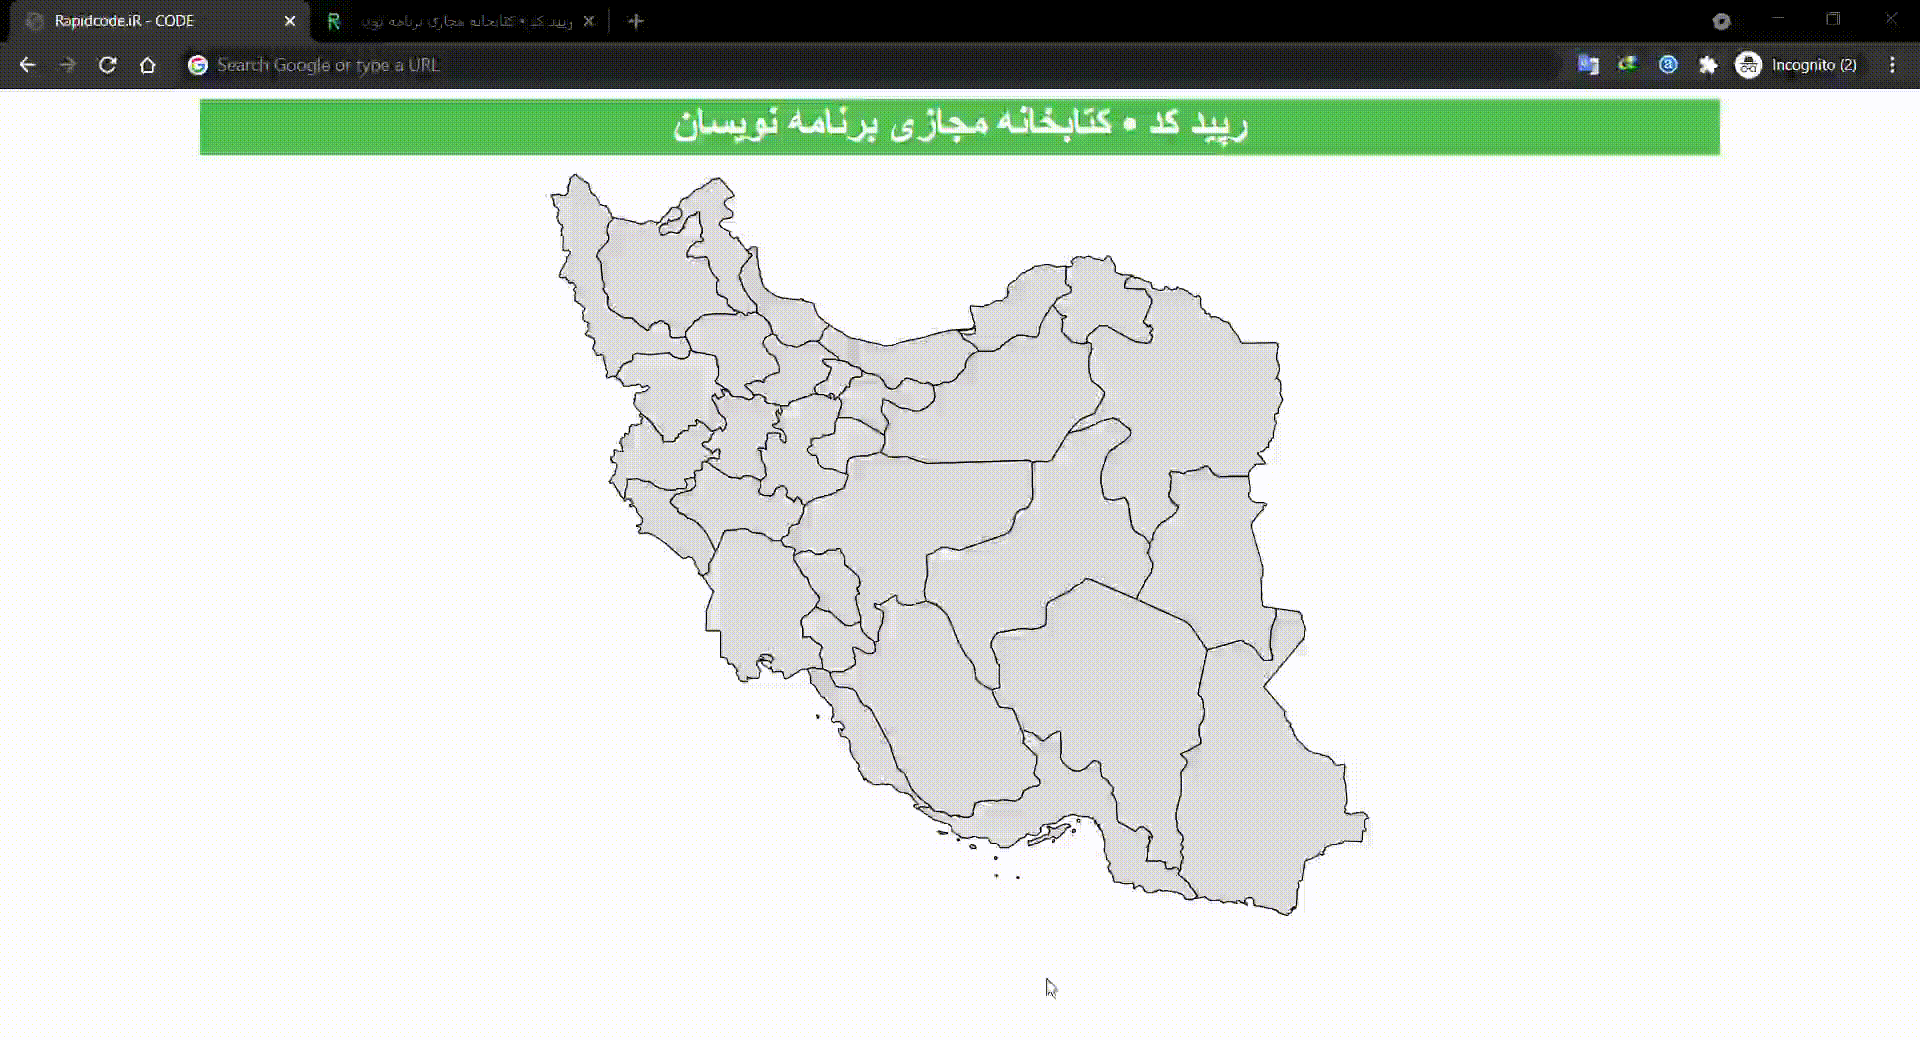 انتخاب شهر/استان کاربر از نقشه ایران با جاوا اسکریپت